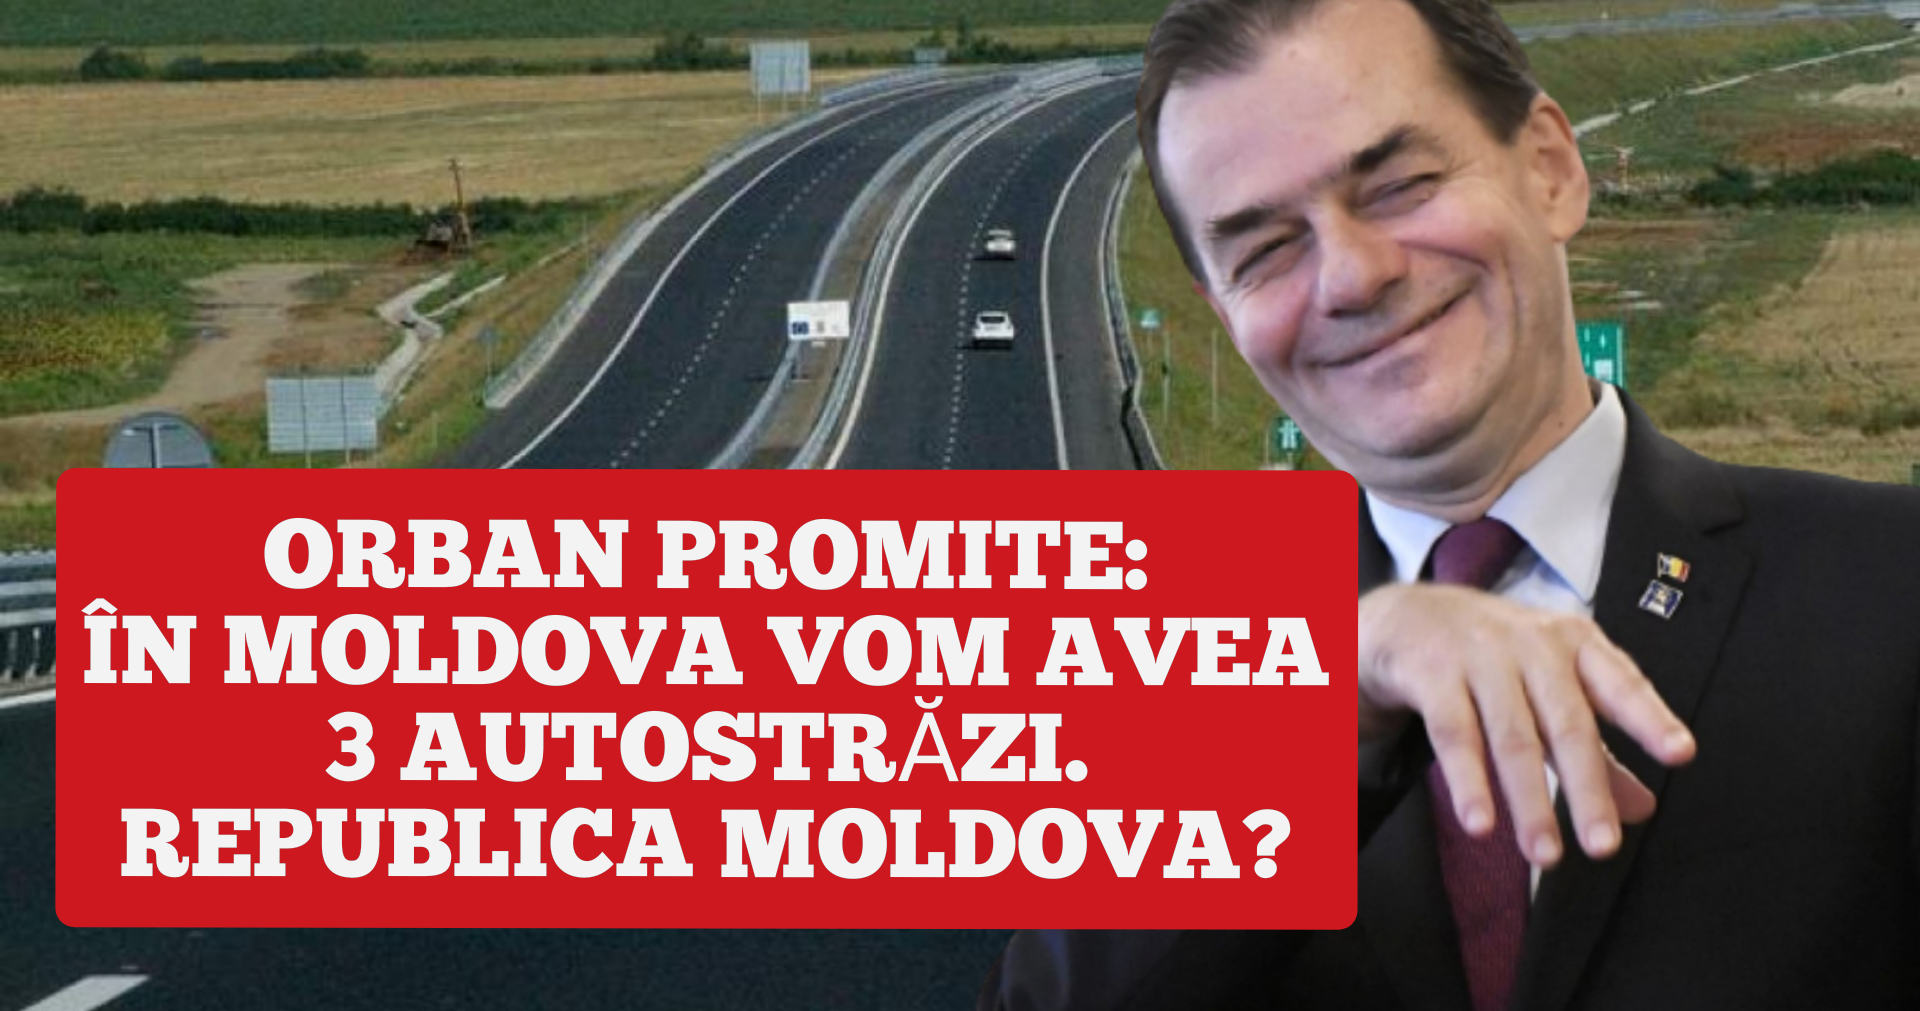 DE RÂS? Orban promite 3 autostrăzi în Moldova